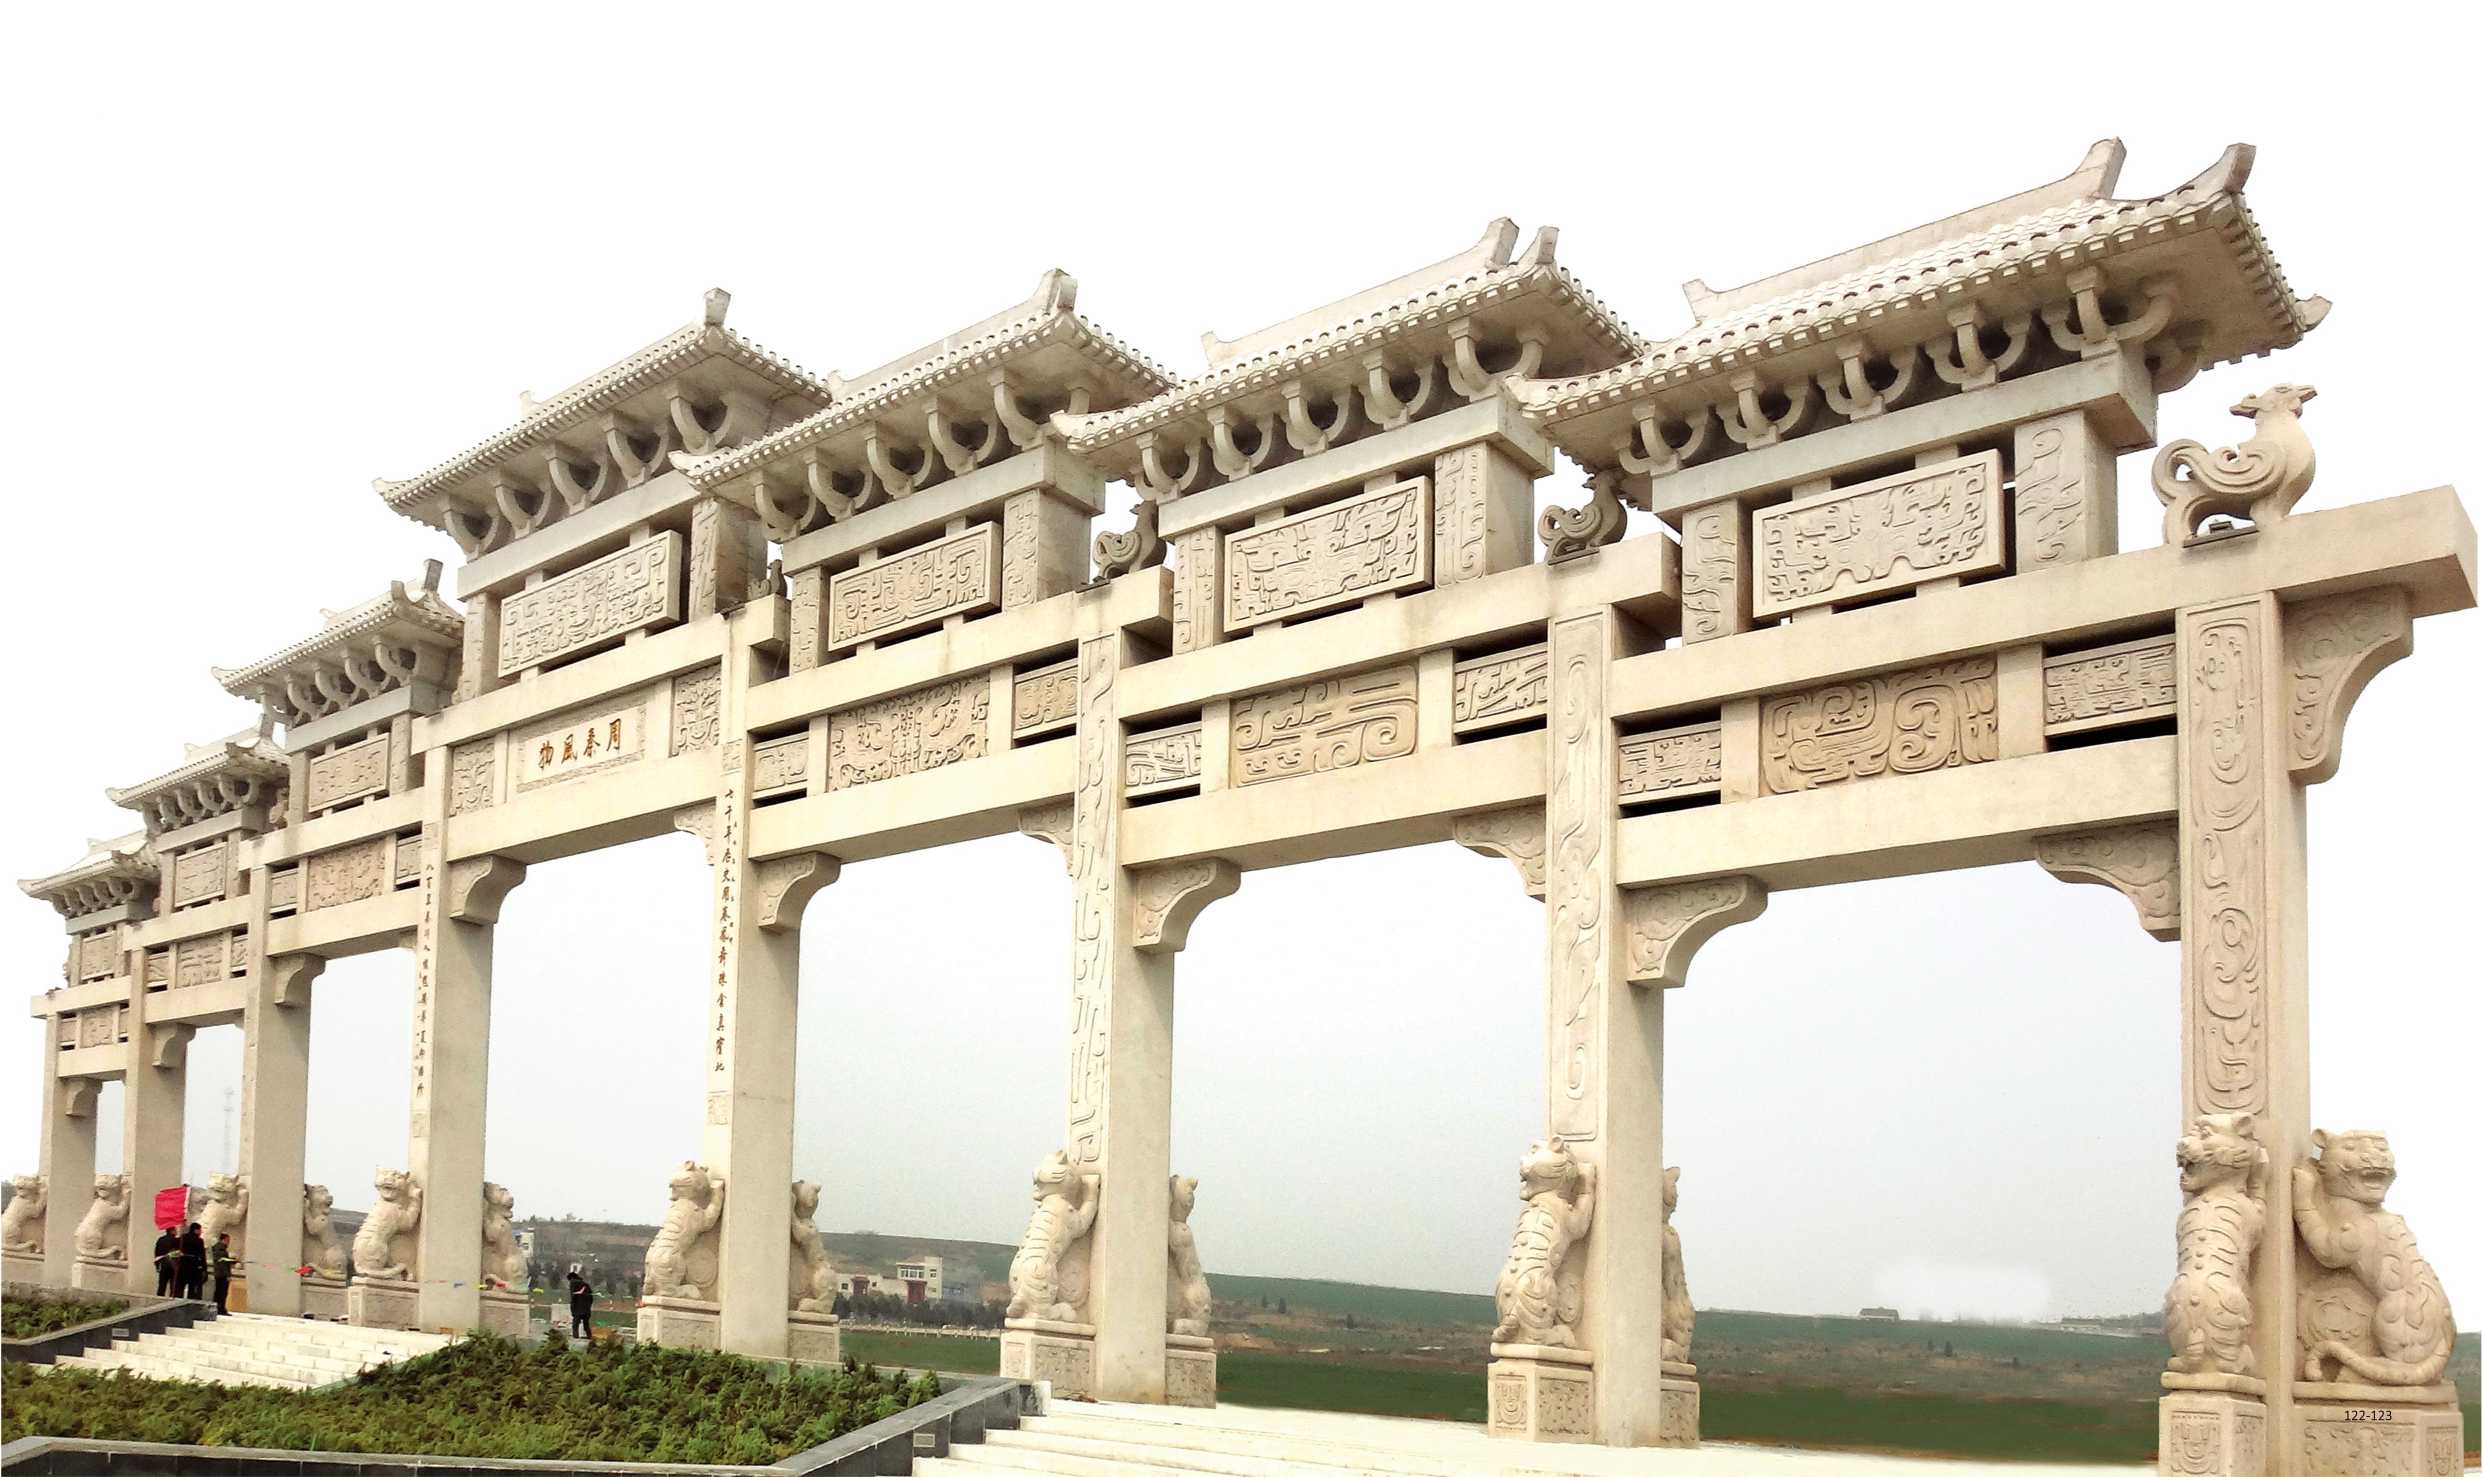 吴德强的作品-吴德强《七门纯石结构牌楼》位于陕西宝鸡代家湾